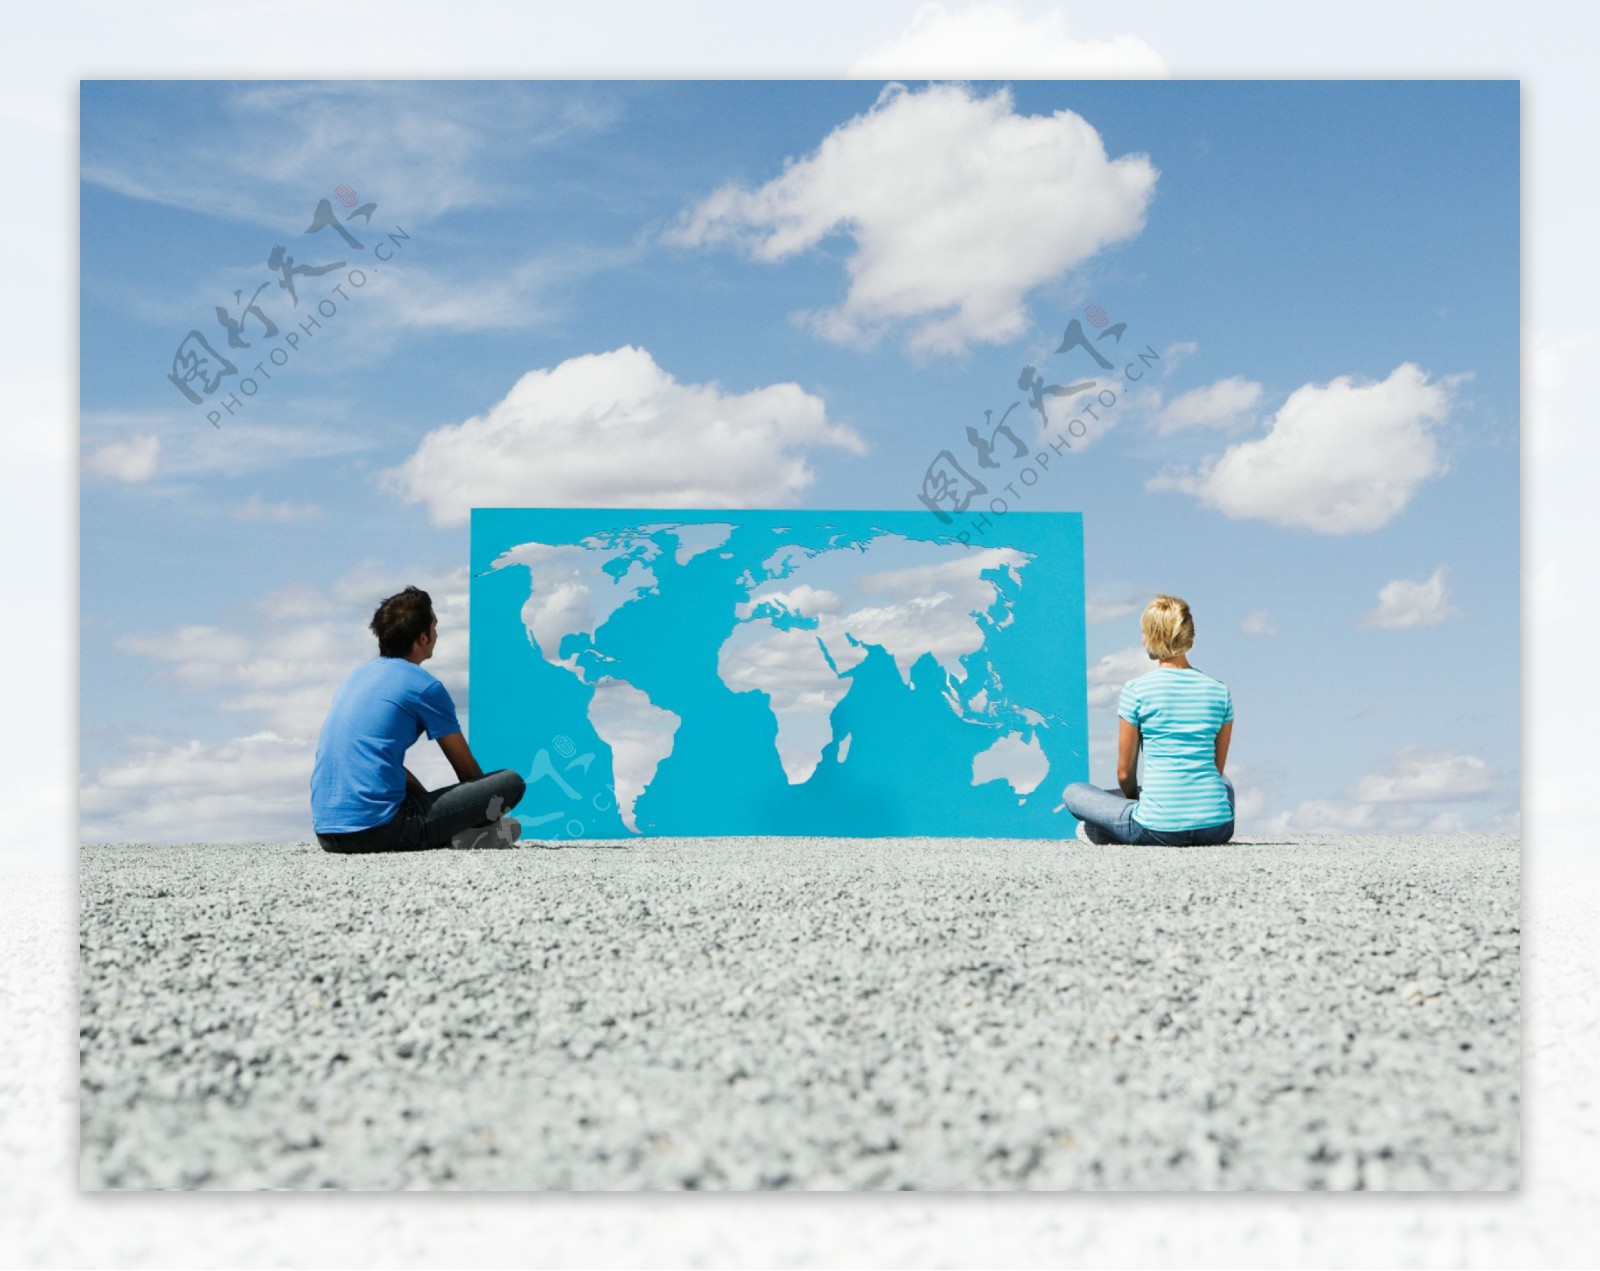 坐在地上的外国人与镂空世界地图图片